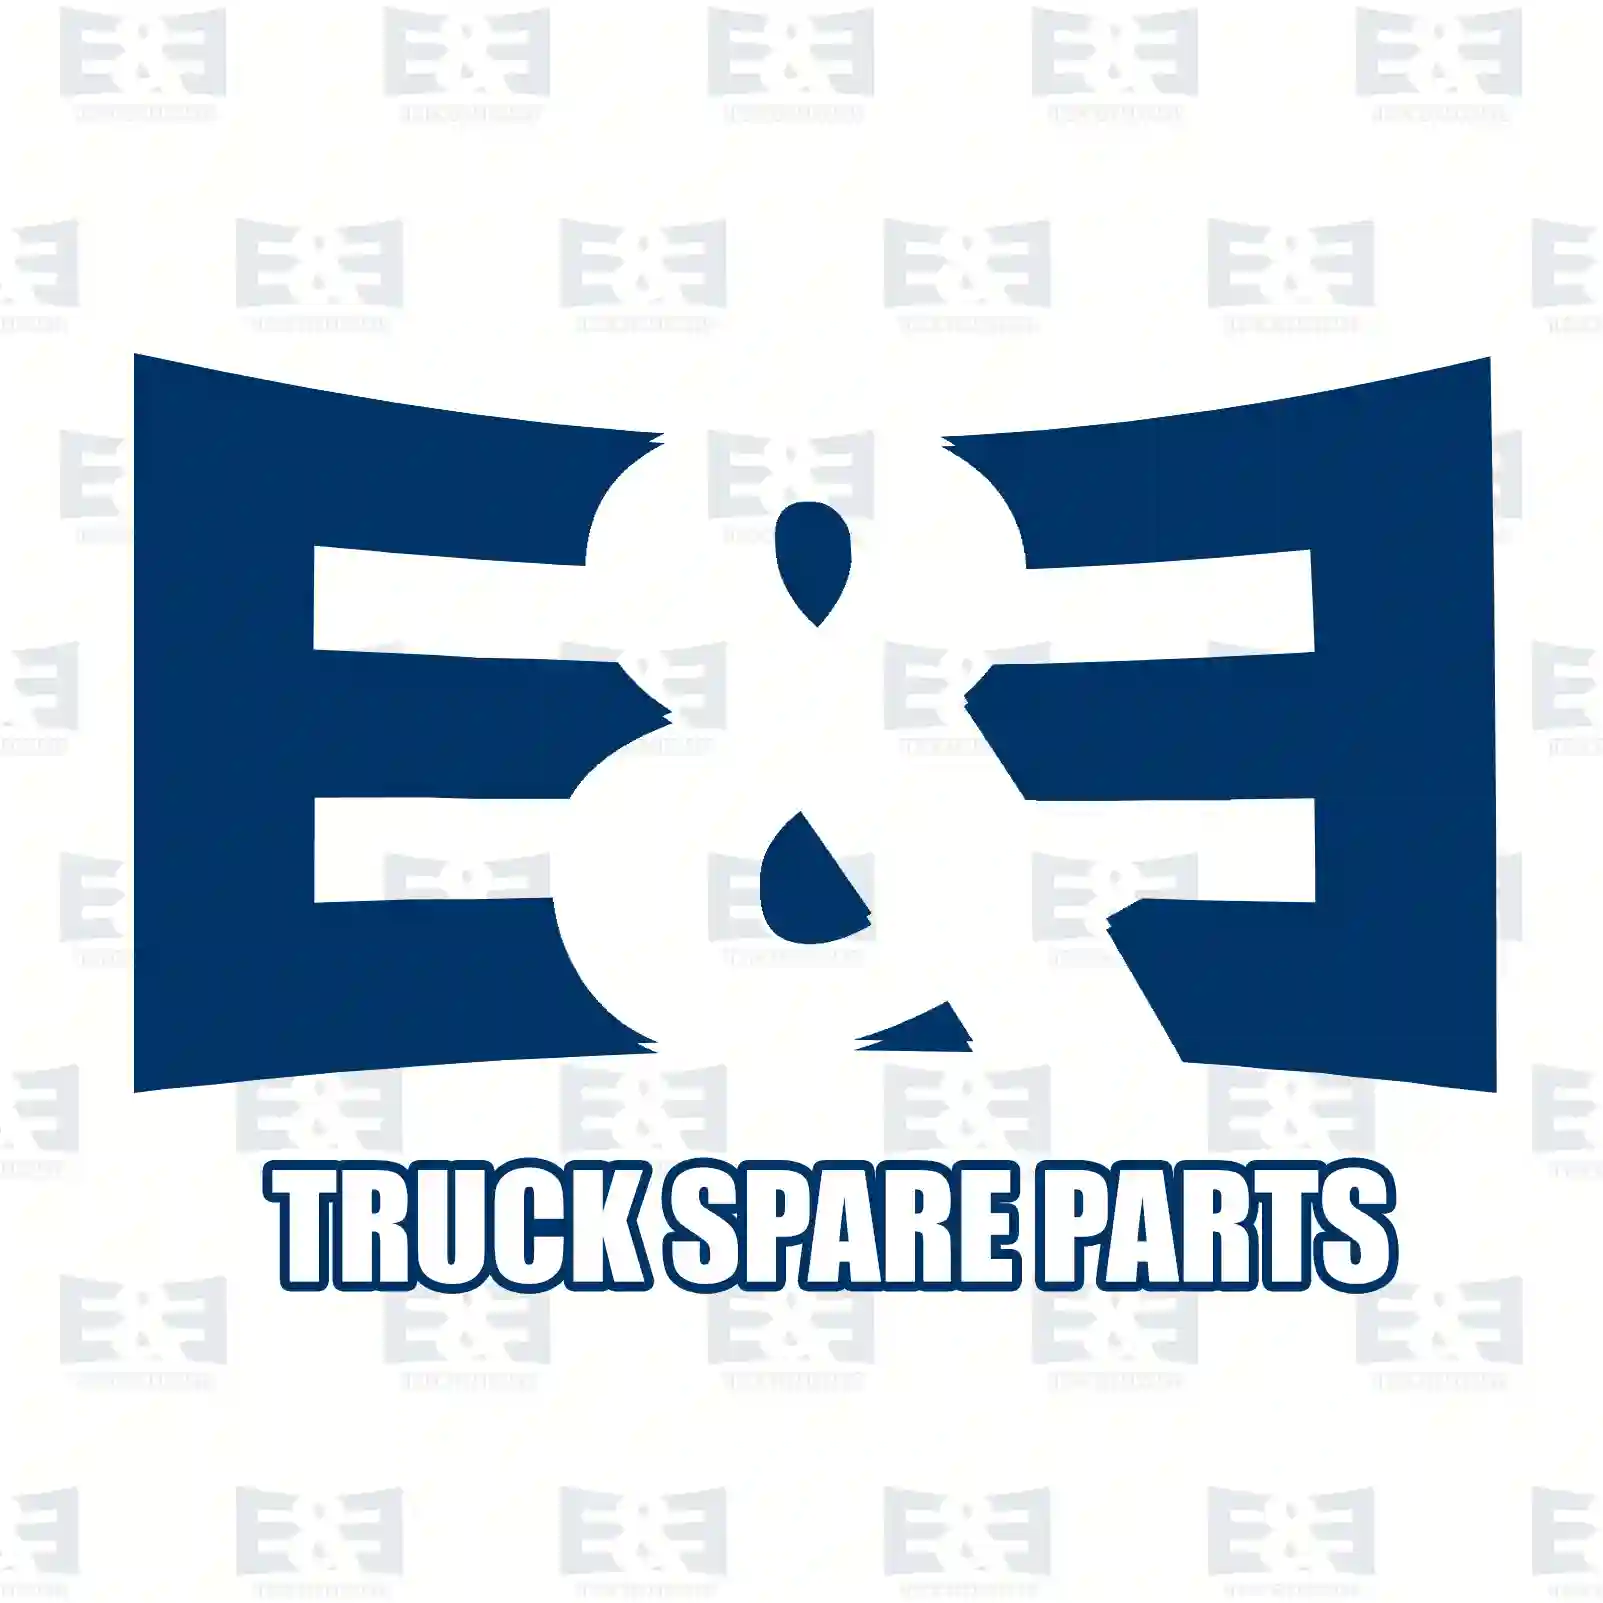 Wiper blade, 2E2280003, ] ||  2E2280003 E&E Truck Spare Parts | Truck Spare Parts, Auotomotive Spare Parts Wiper blade, 2E2280003, ] ||  2E2280003 E&E Truck Spare Parts | Truck Spare Parts, Auotomotive Spare Parts